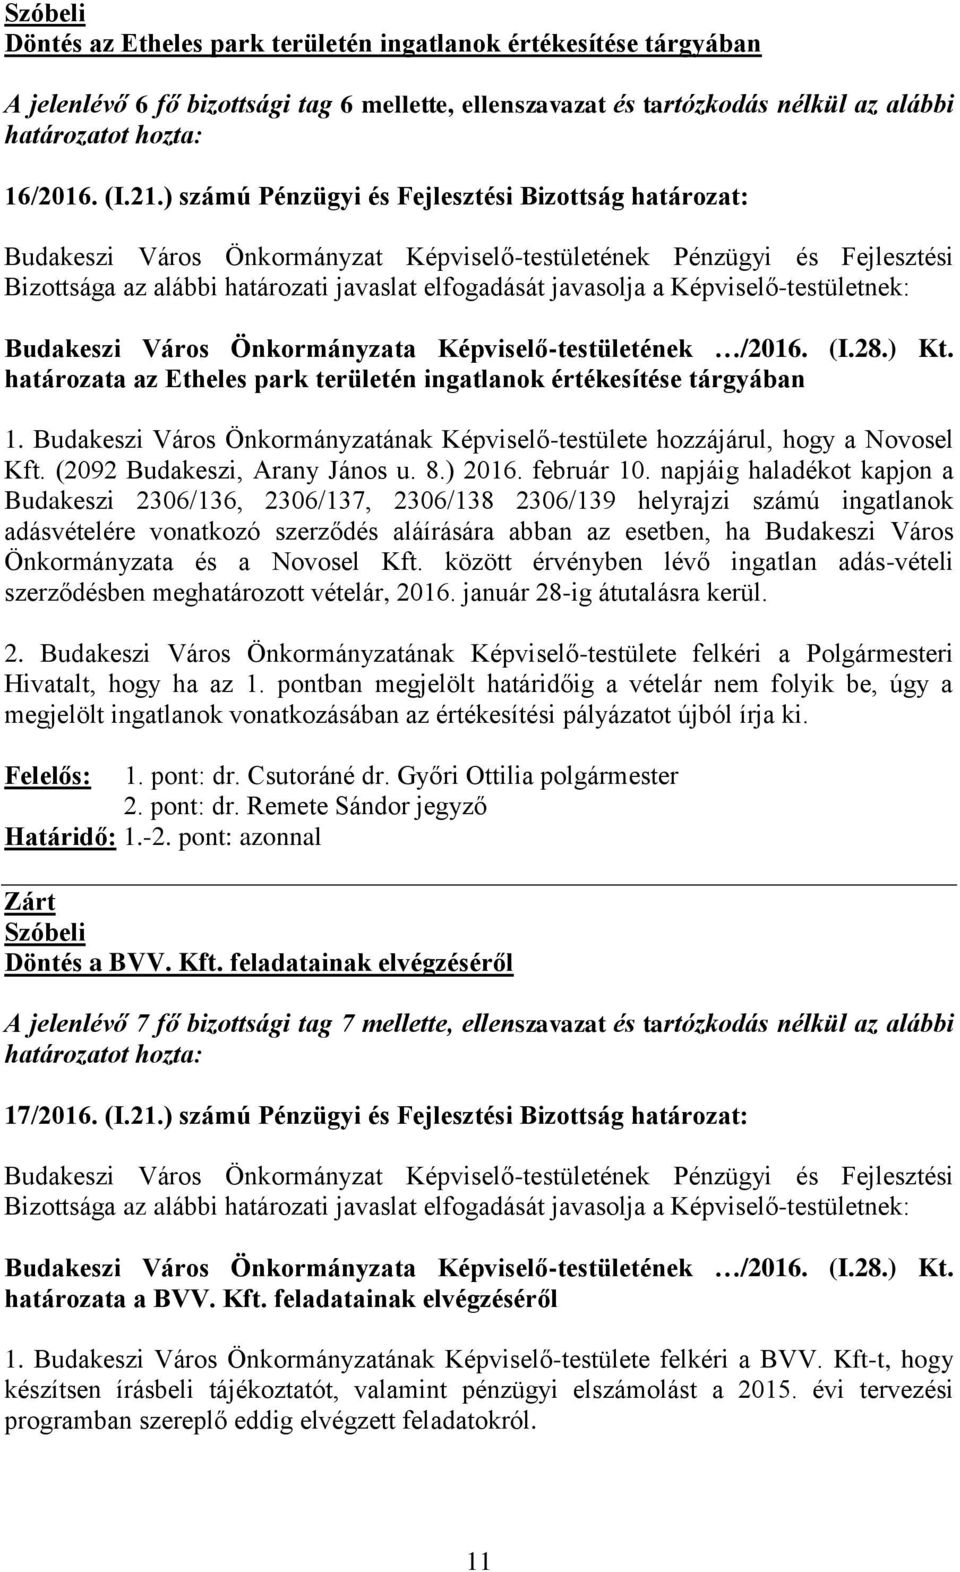 Budakeszi Város Önkormányzatának Képviselő-testülete hozzájárul, hogy a Novosel Kft. (2092 Budakeszi, Arany János u. 8.) 2016. február 10.